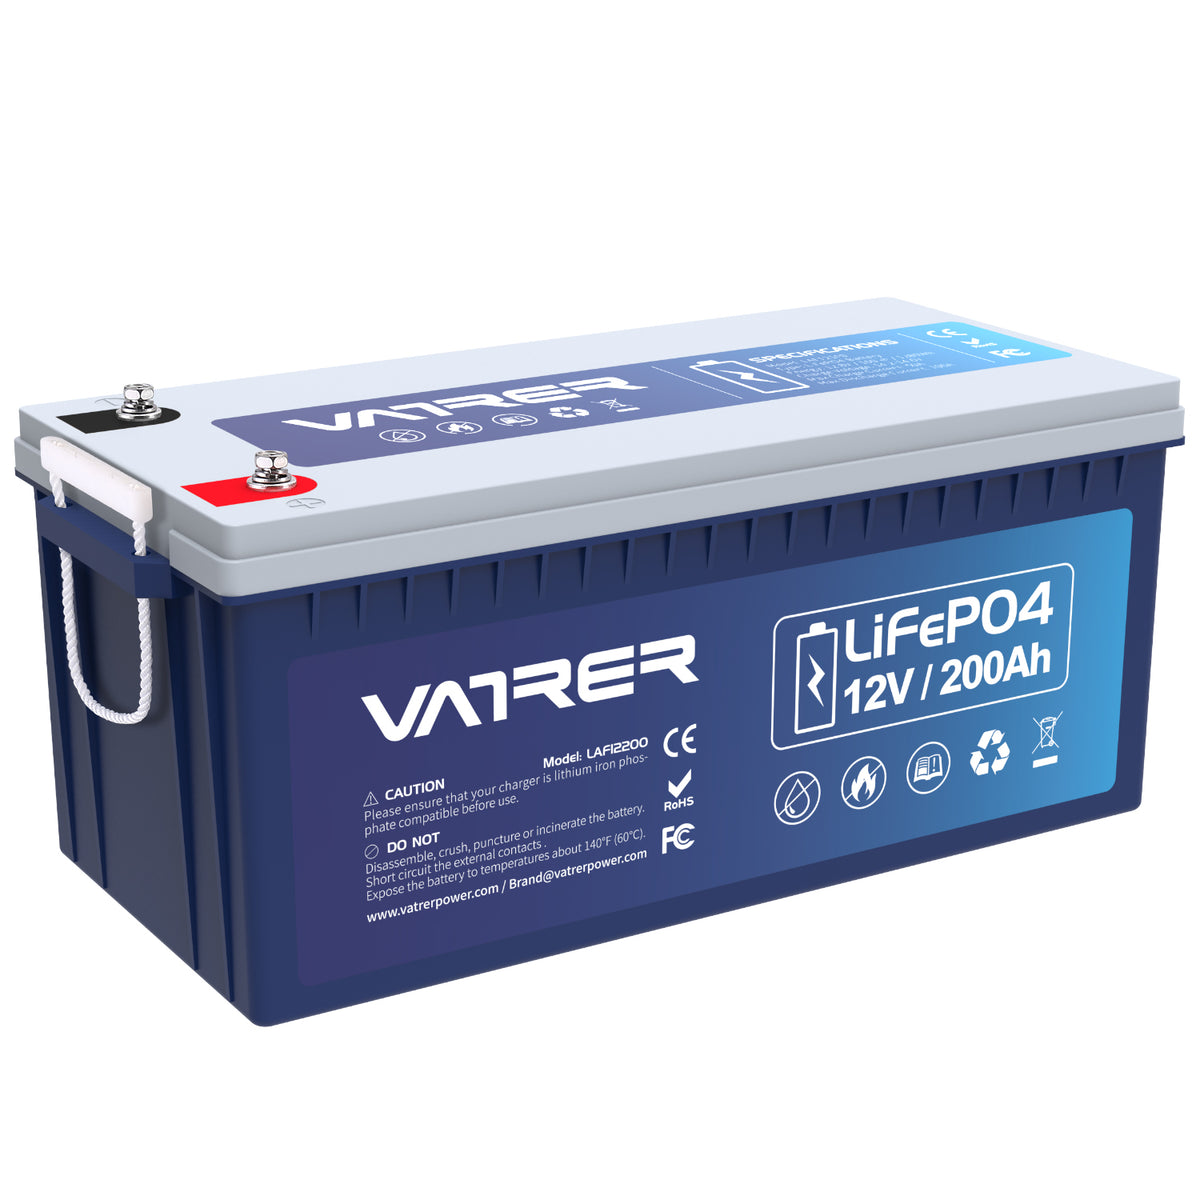 Batterie au lithium 12 V 200 Ah Plus LiFePO4, BMS 200 A intégré et coupure basse température.